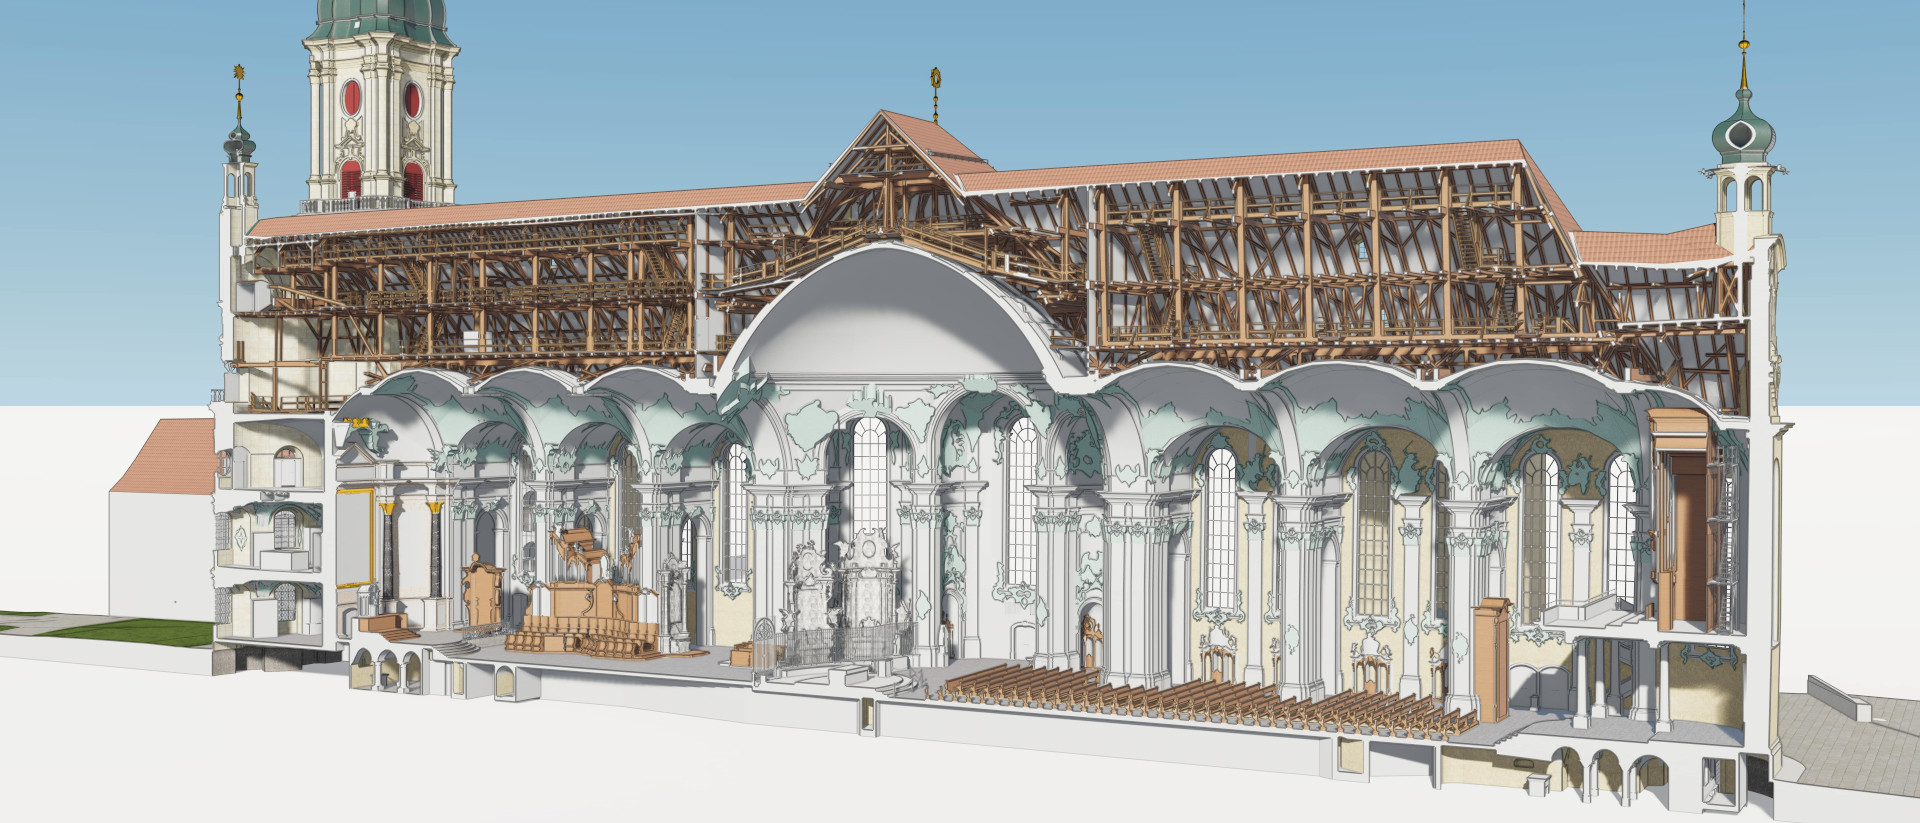 Die 3D-Modelle ermöglichen ganz neue Ansichten, wie die bereits ausgewerteten Daten bei der Kathedrale St.Gallen zeigen.